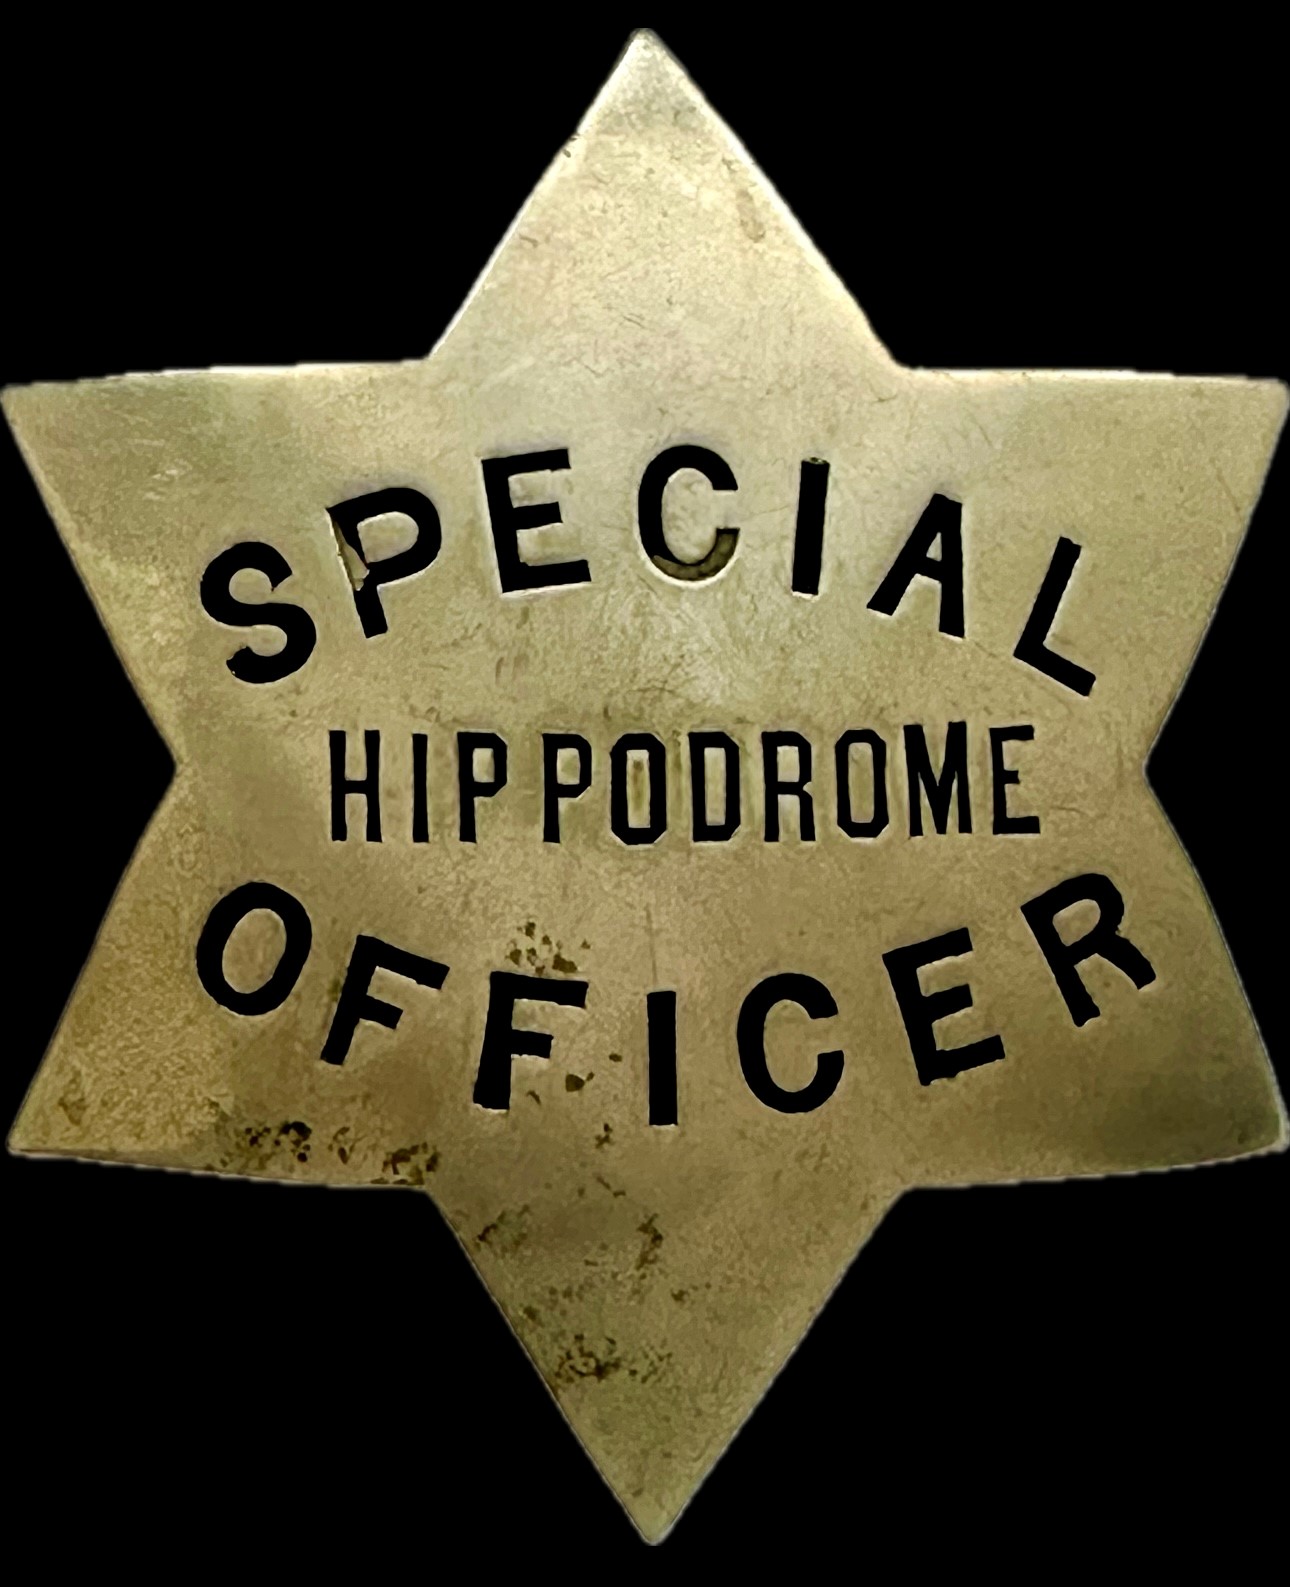 Hippodrome Special Officer